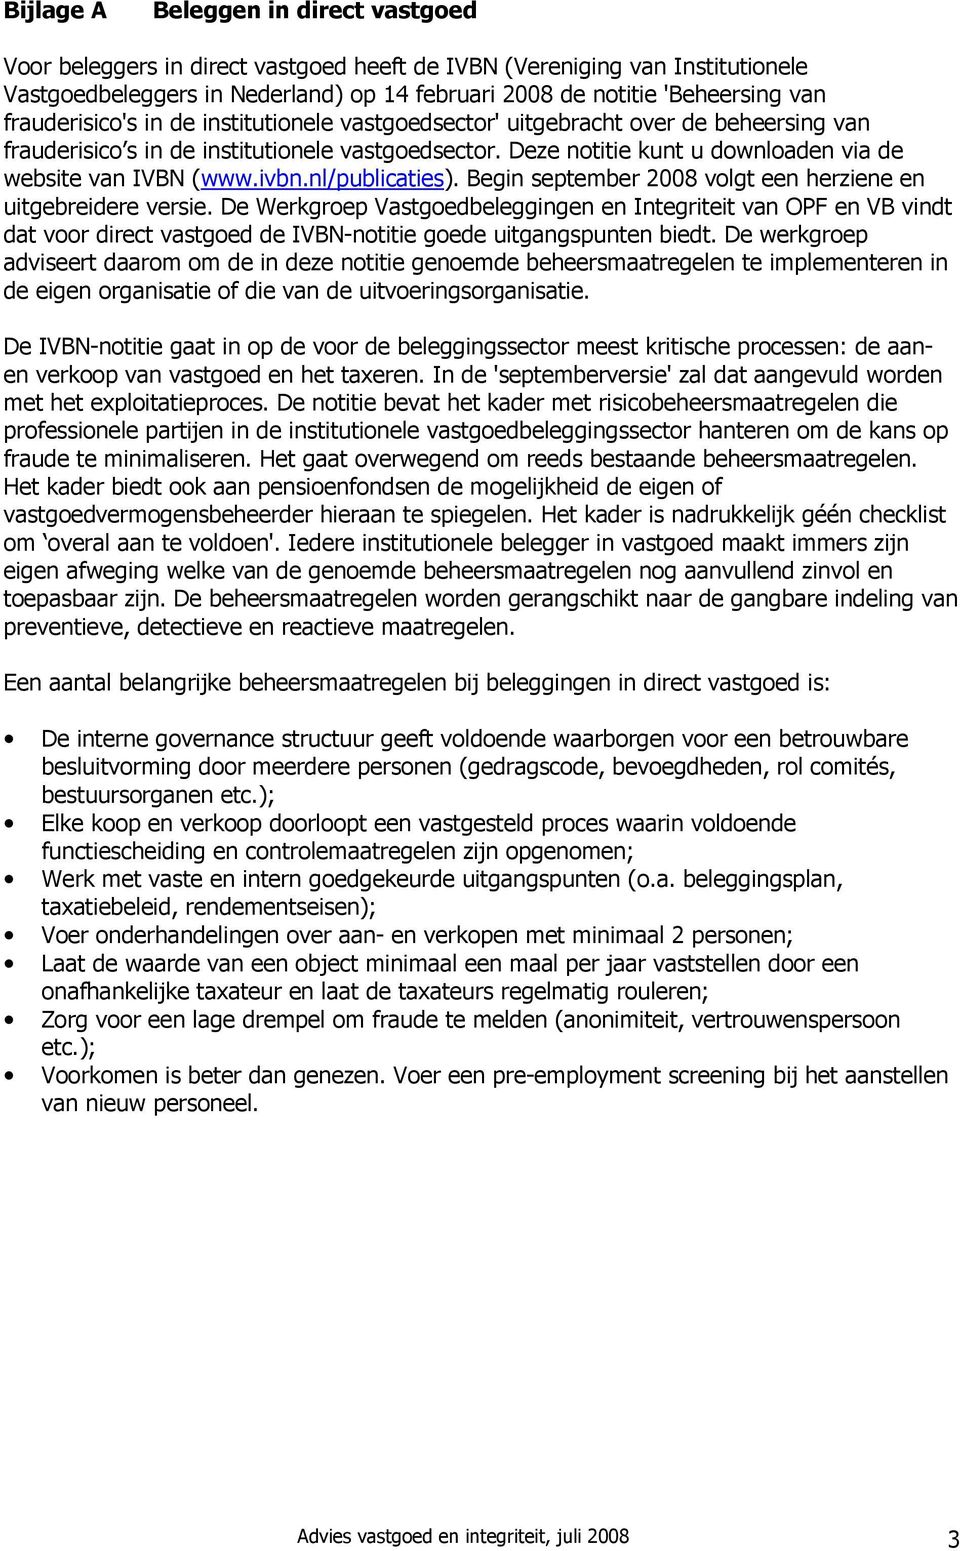 ivbn.nl/publicaties). Begin september 2008 volgt een herziene en uitgebreidere versie.